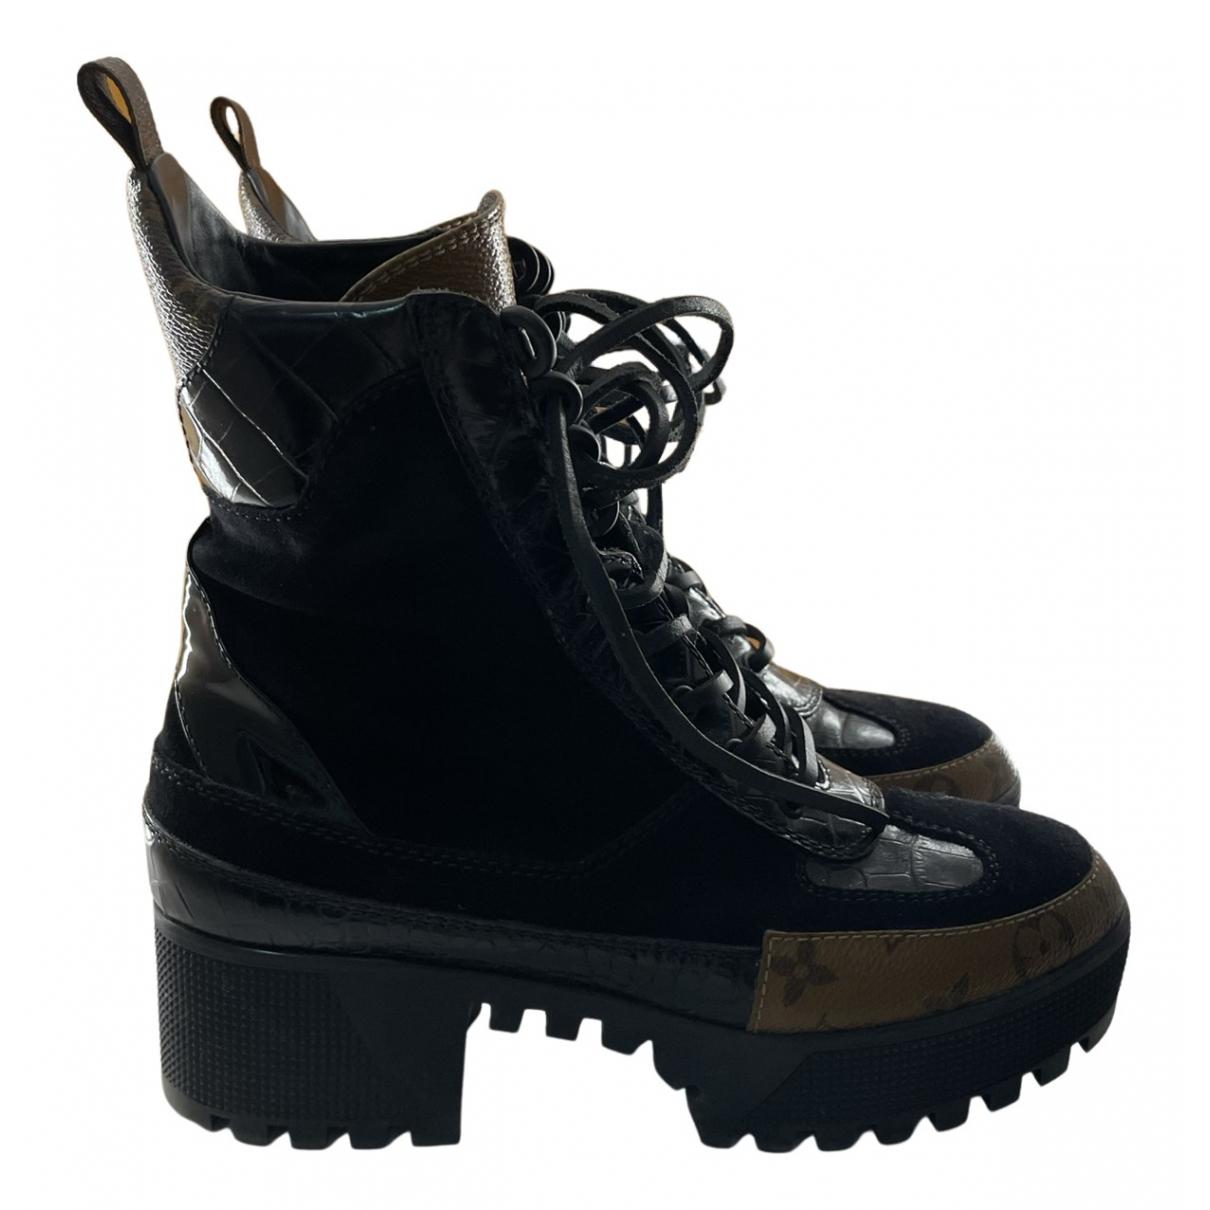 Chanel Desert boots(Black)